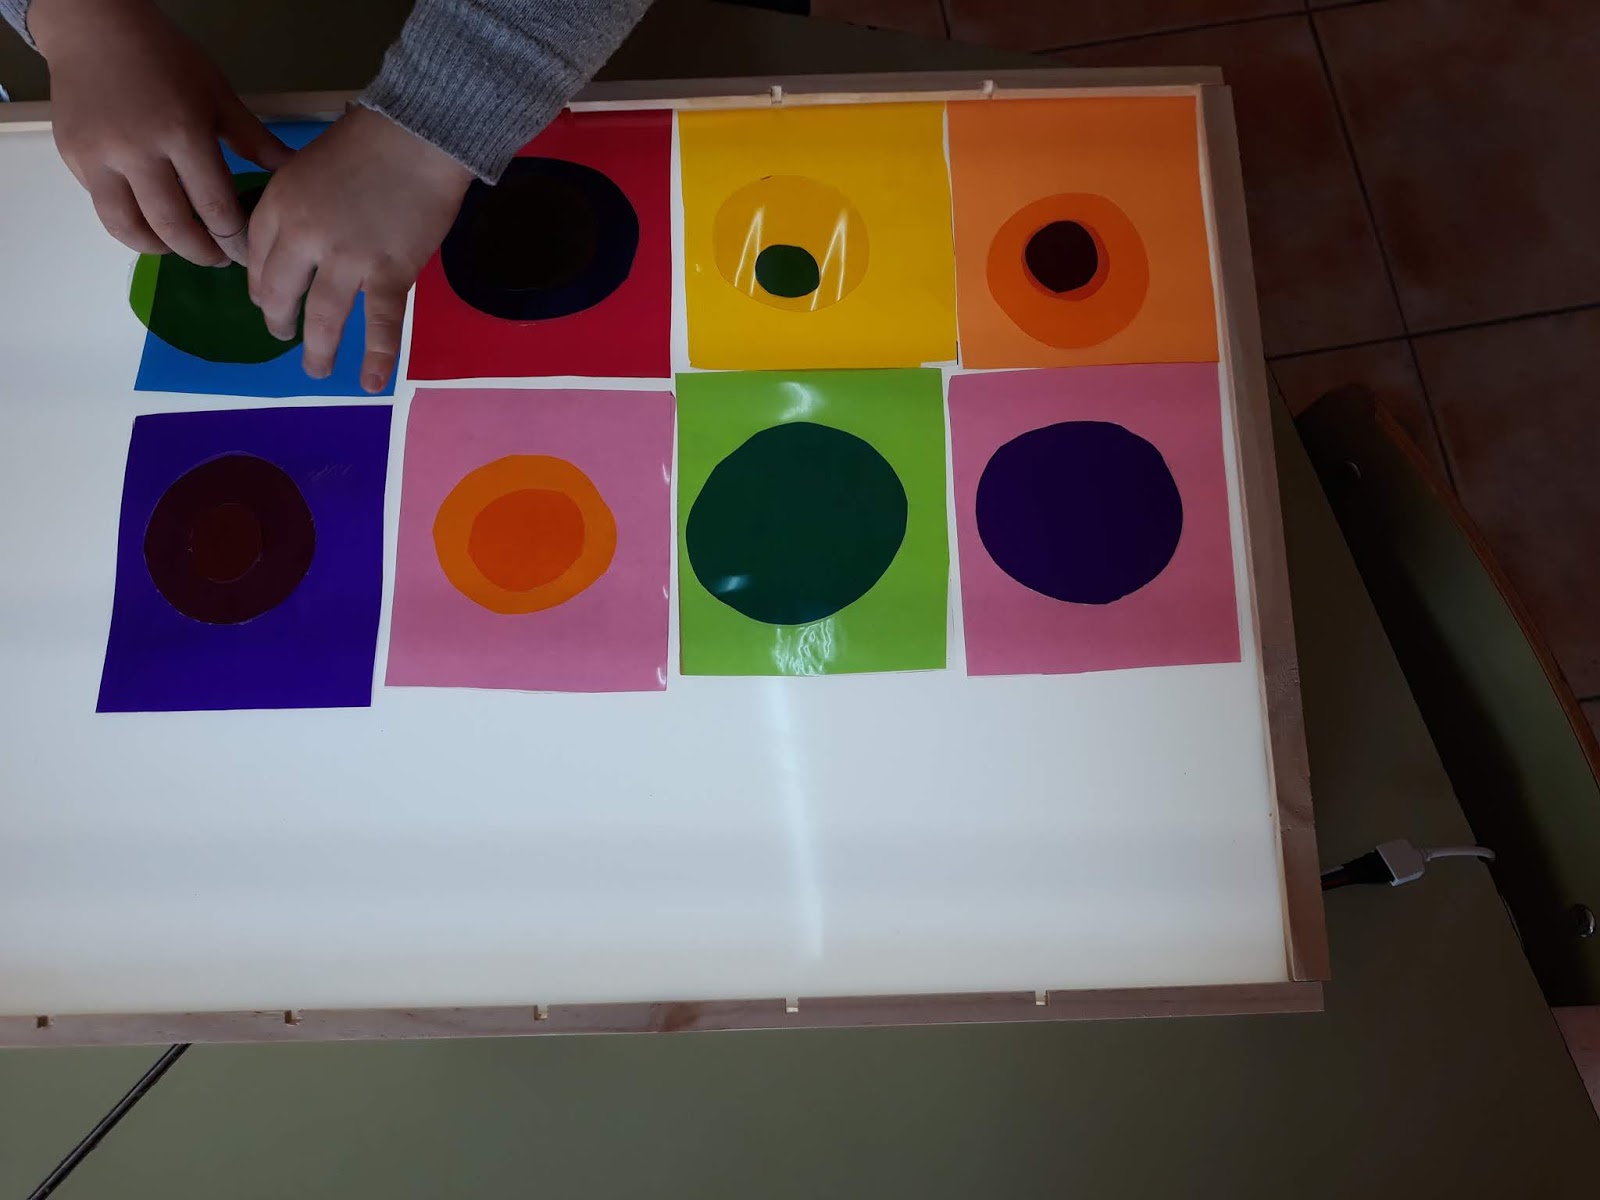 la mesa de luz – Montessori en tu casa